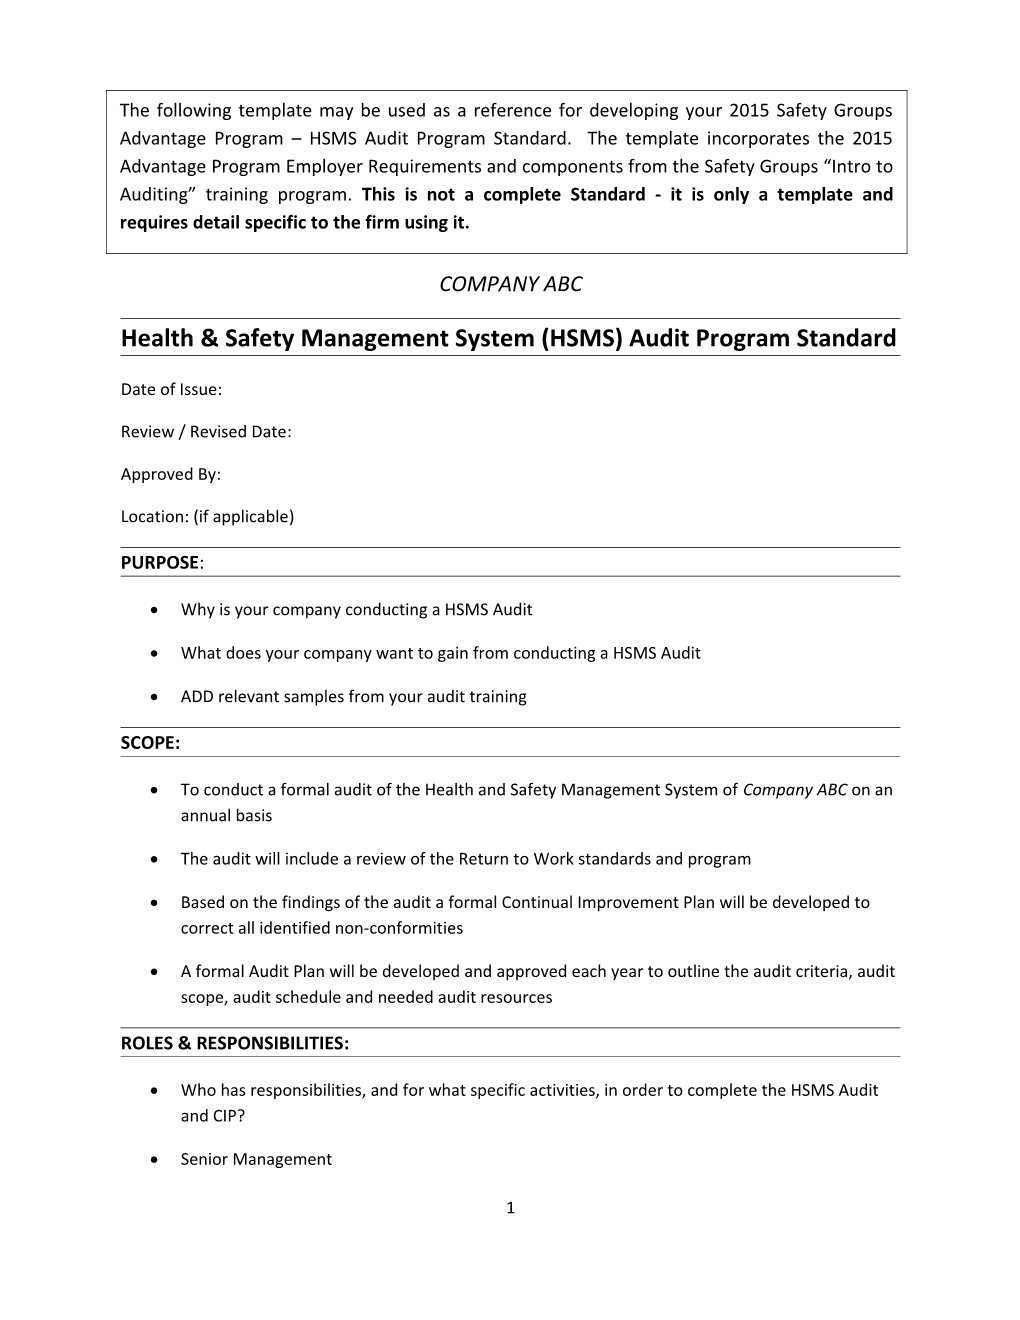 Health & Safety Management System (HSMS) Audit Program Standard MH2